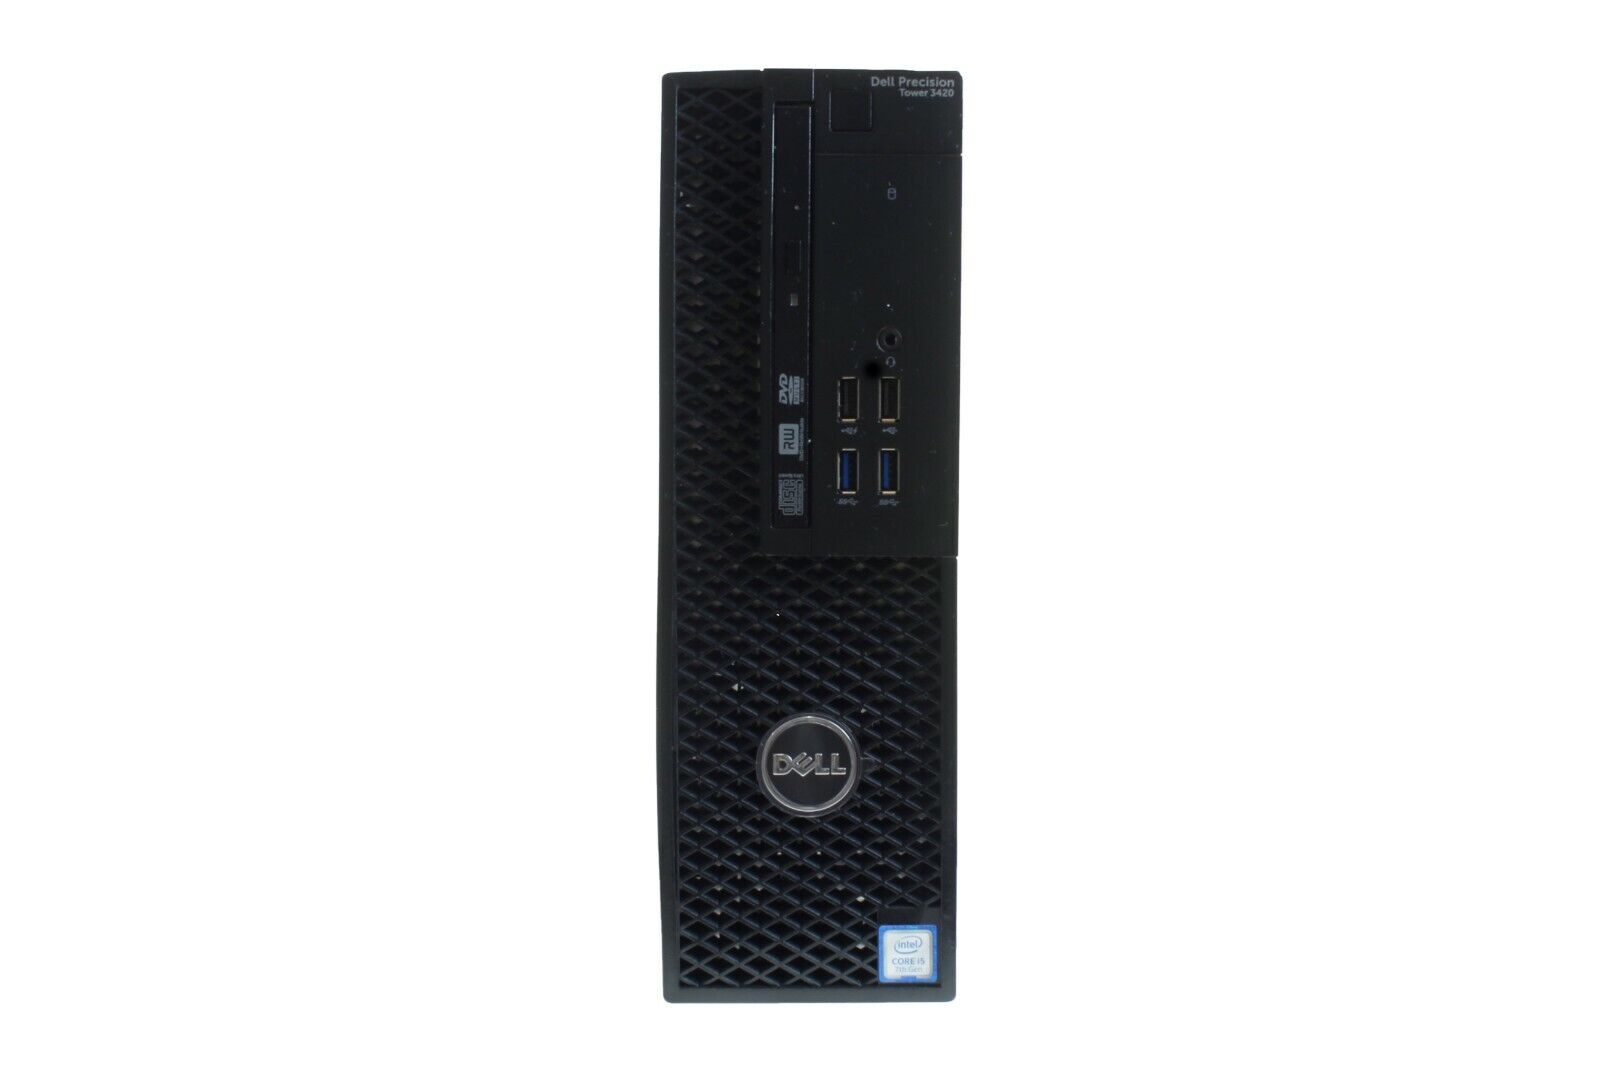 Dell Precision 3420 SFF Intel Xeon E3-1220 v5 16GB RAM 240GB SSD Win 10 Desktop